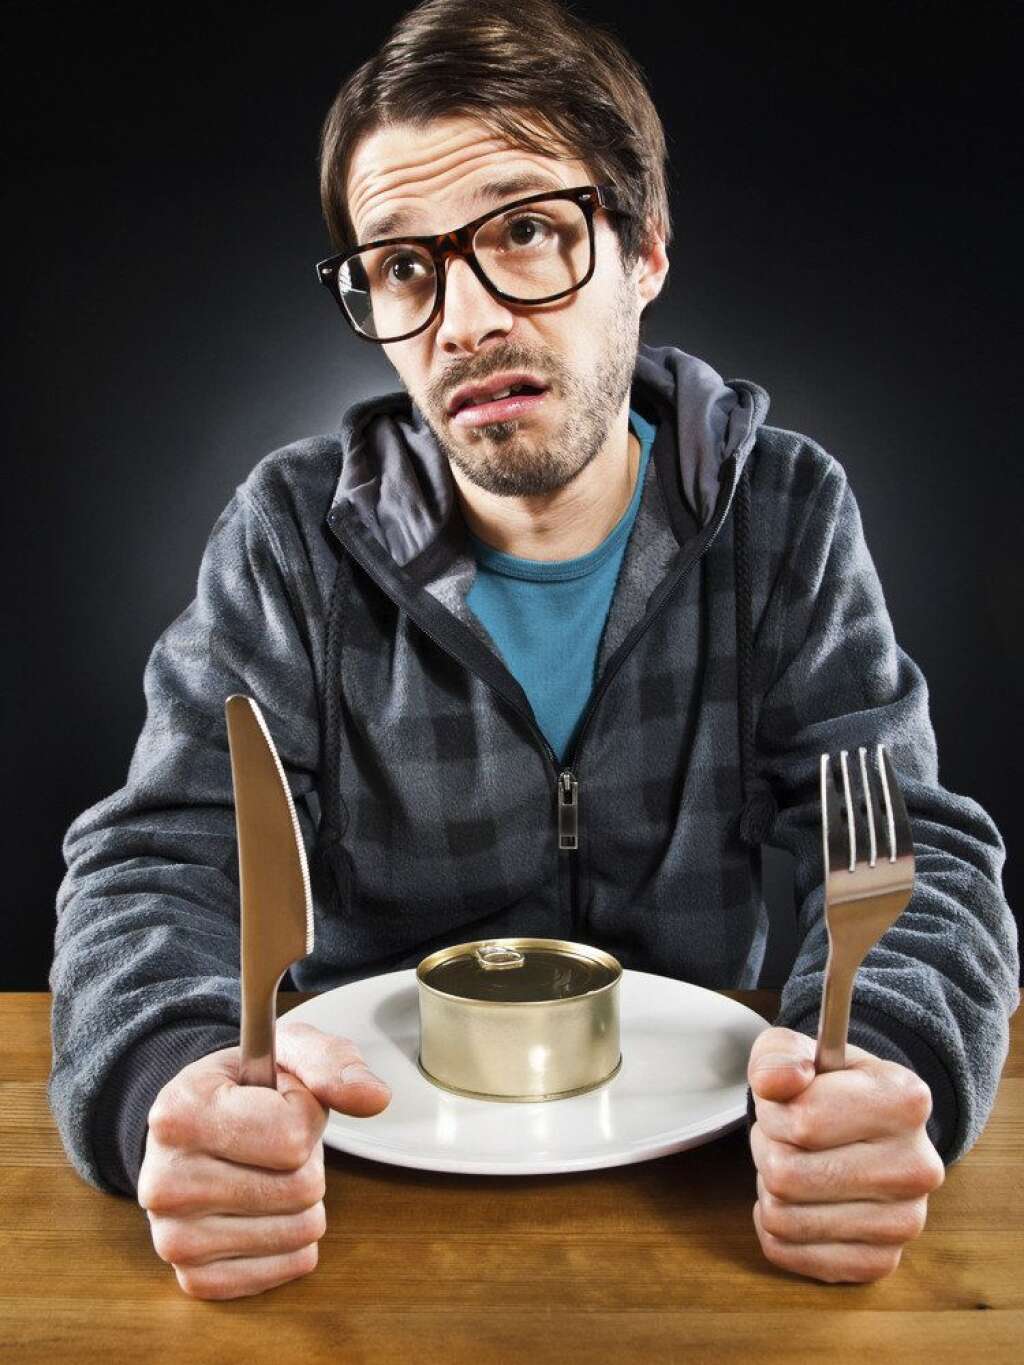 Manger, c'est aléatoire - Conséquence du manque d'argent: une fois sur deux, 22% des jeunes contrôlent leur envie de manger.